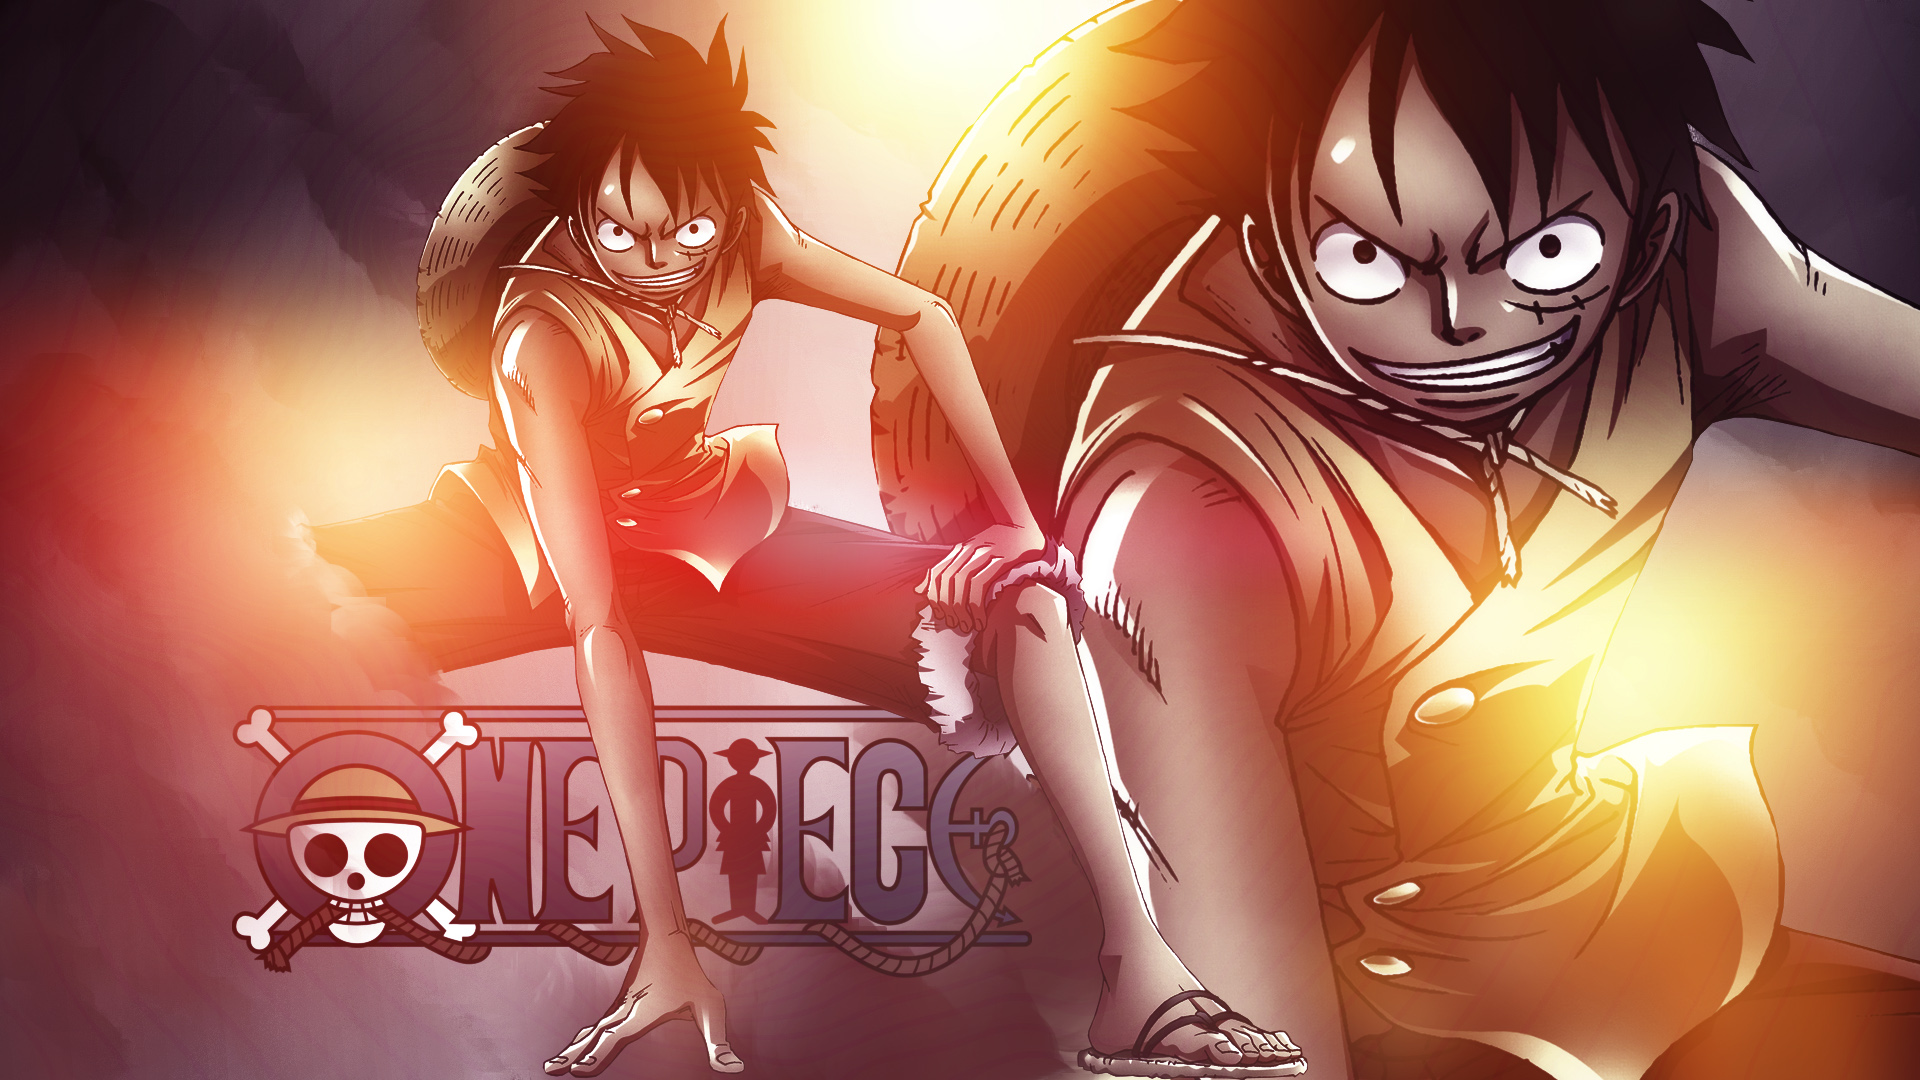 Hình nền Luffy One Piece HD: Fan hâm mộ các nhân vật trong series One Piece đang tìm kiếm hình nền chất lượng cao để trang trí cho máy tính, điện thoại. Hình nền Luffy One Piece HD chắc chắn sẽ là sự lựa chọn tuyệt vời cho bạn. Với độ phân giải sắc nét, bạn có thể tận hưởng những chi tiết tuyệt vời của Luffy như chưa từng thấy trước đây. Hãy nhấn vào hình ảnh để tải về ngay.